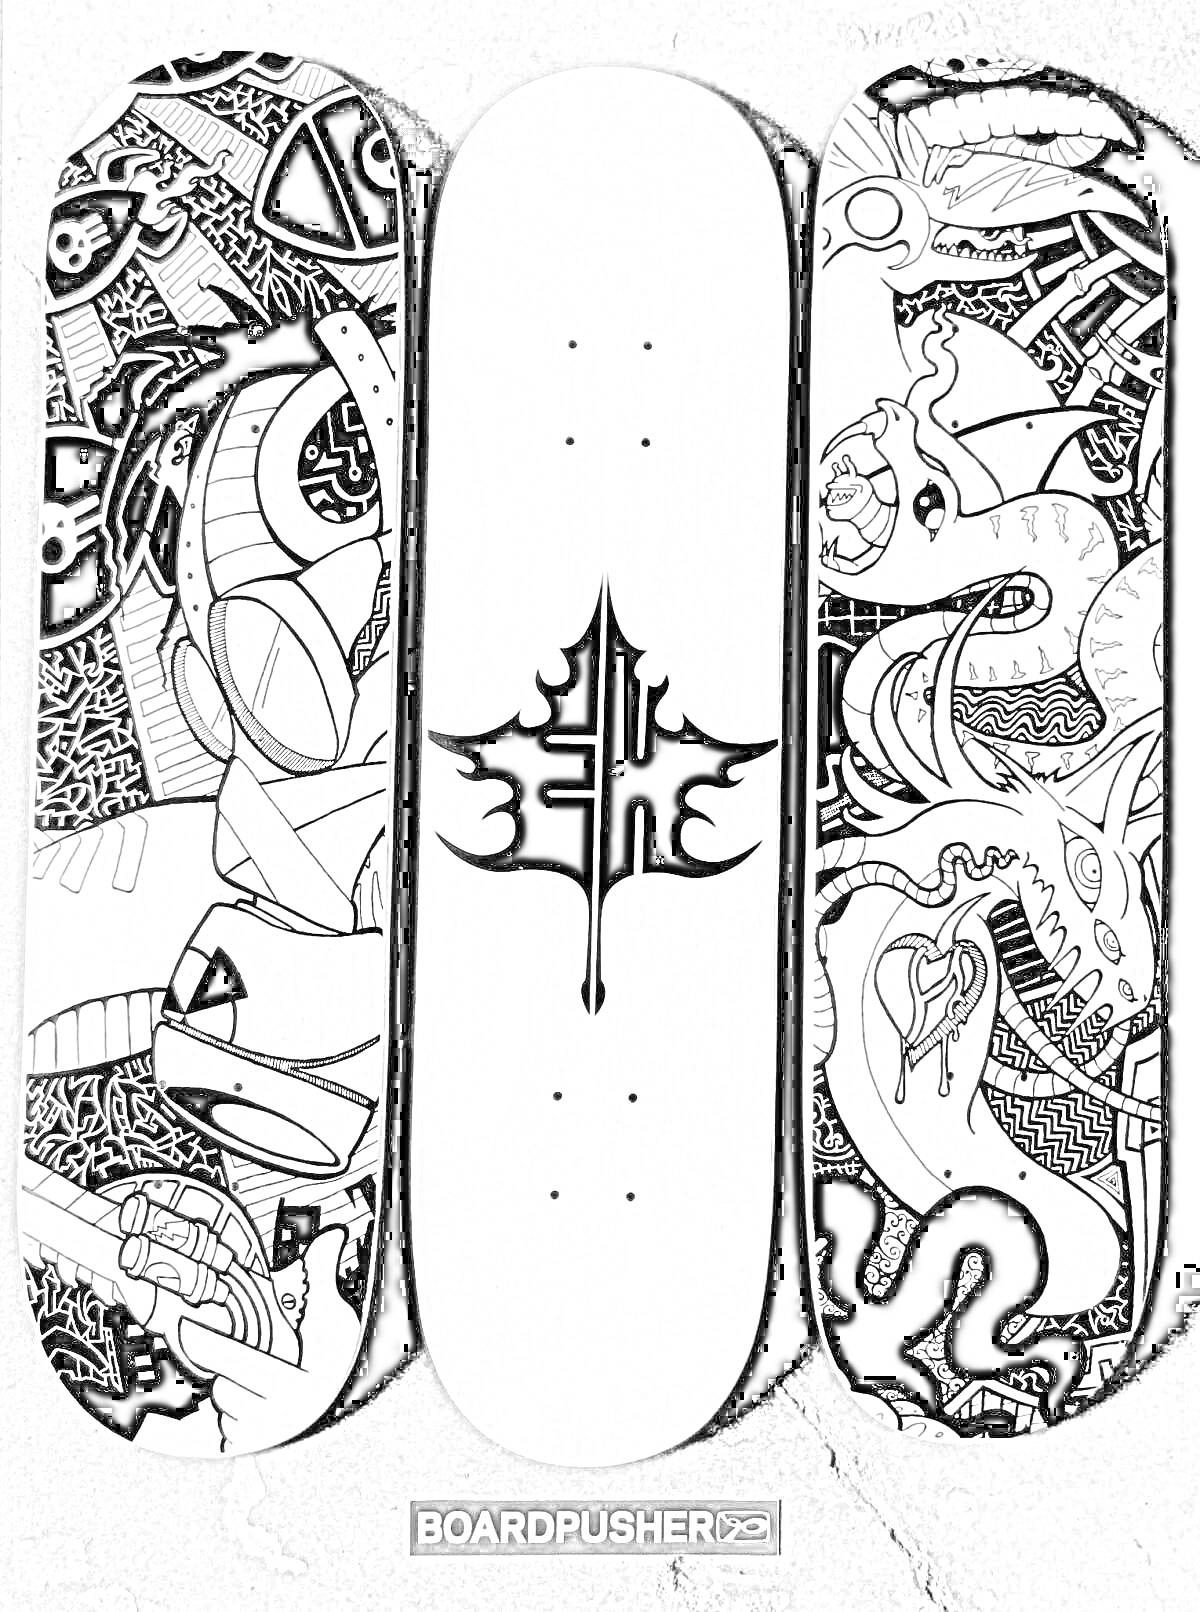 Раскраска Три скейтборда с рисунками (левый: абстрактные формы с лицами роботов, средний: абстрактный лист, правый: змея с цветами и линиями)